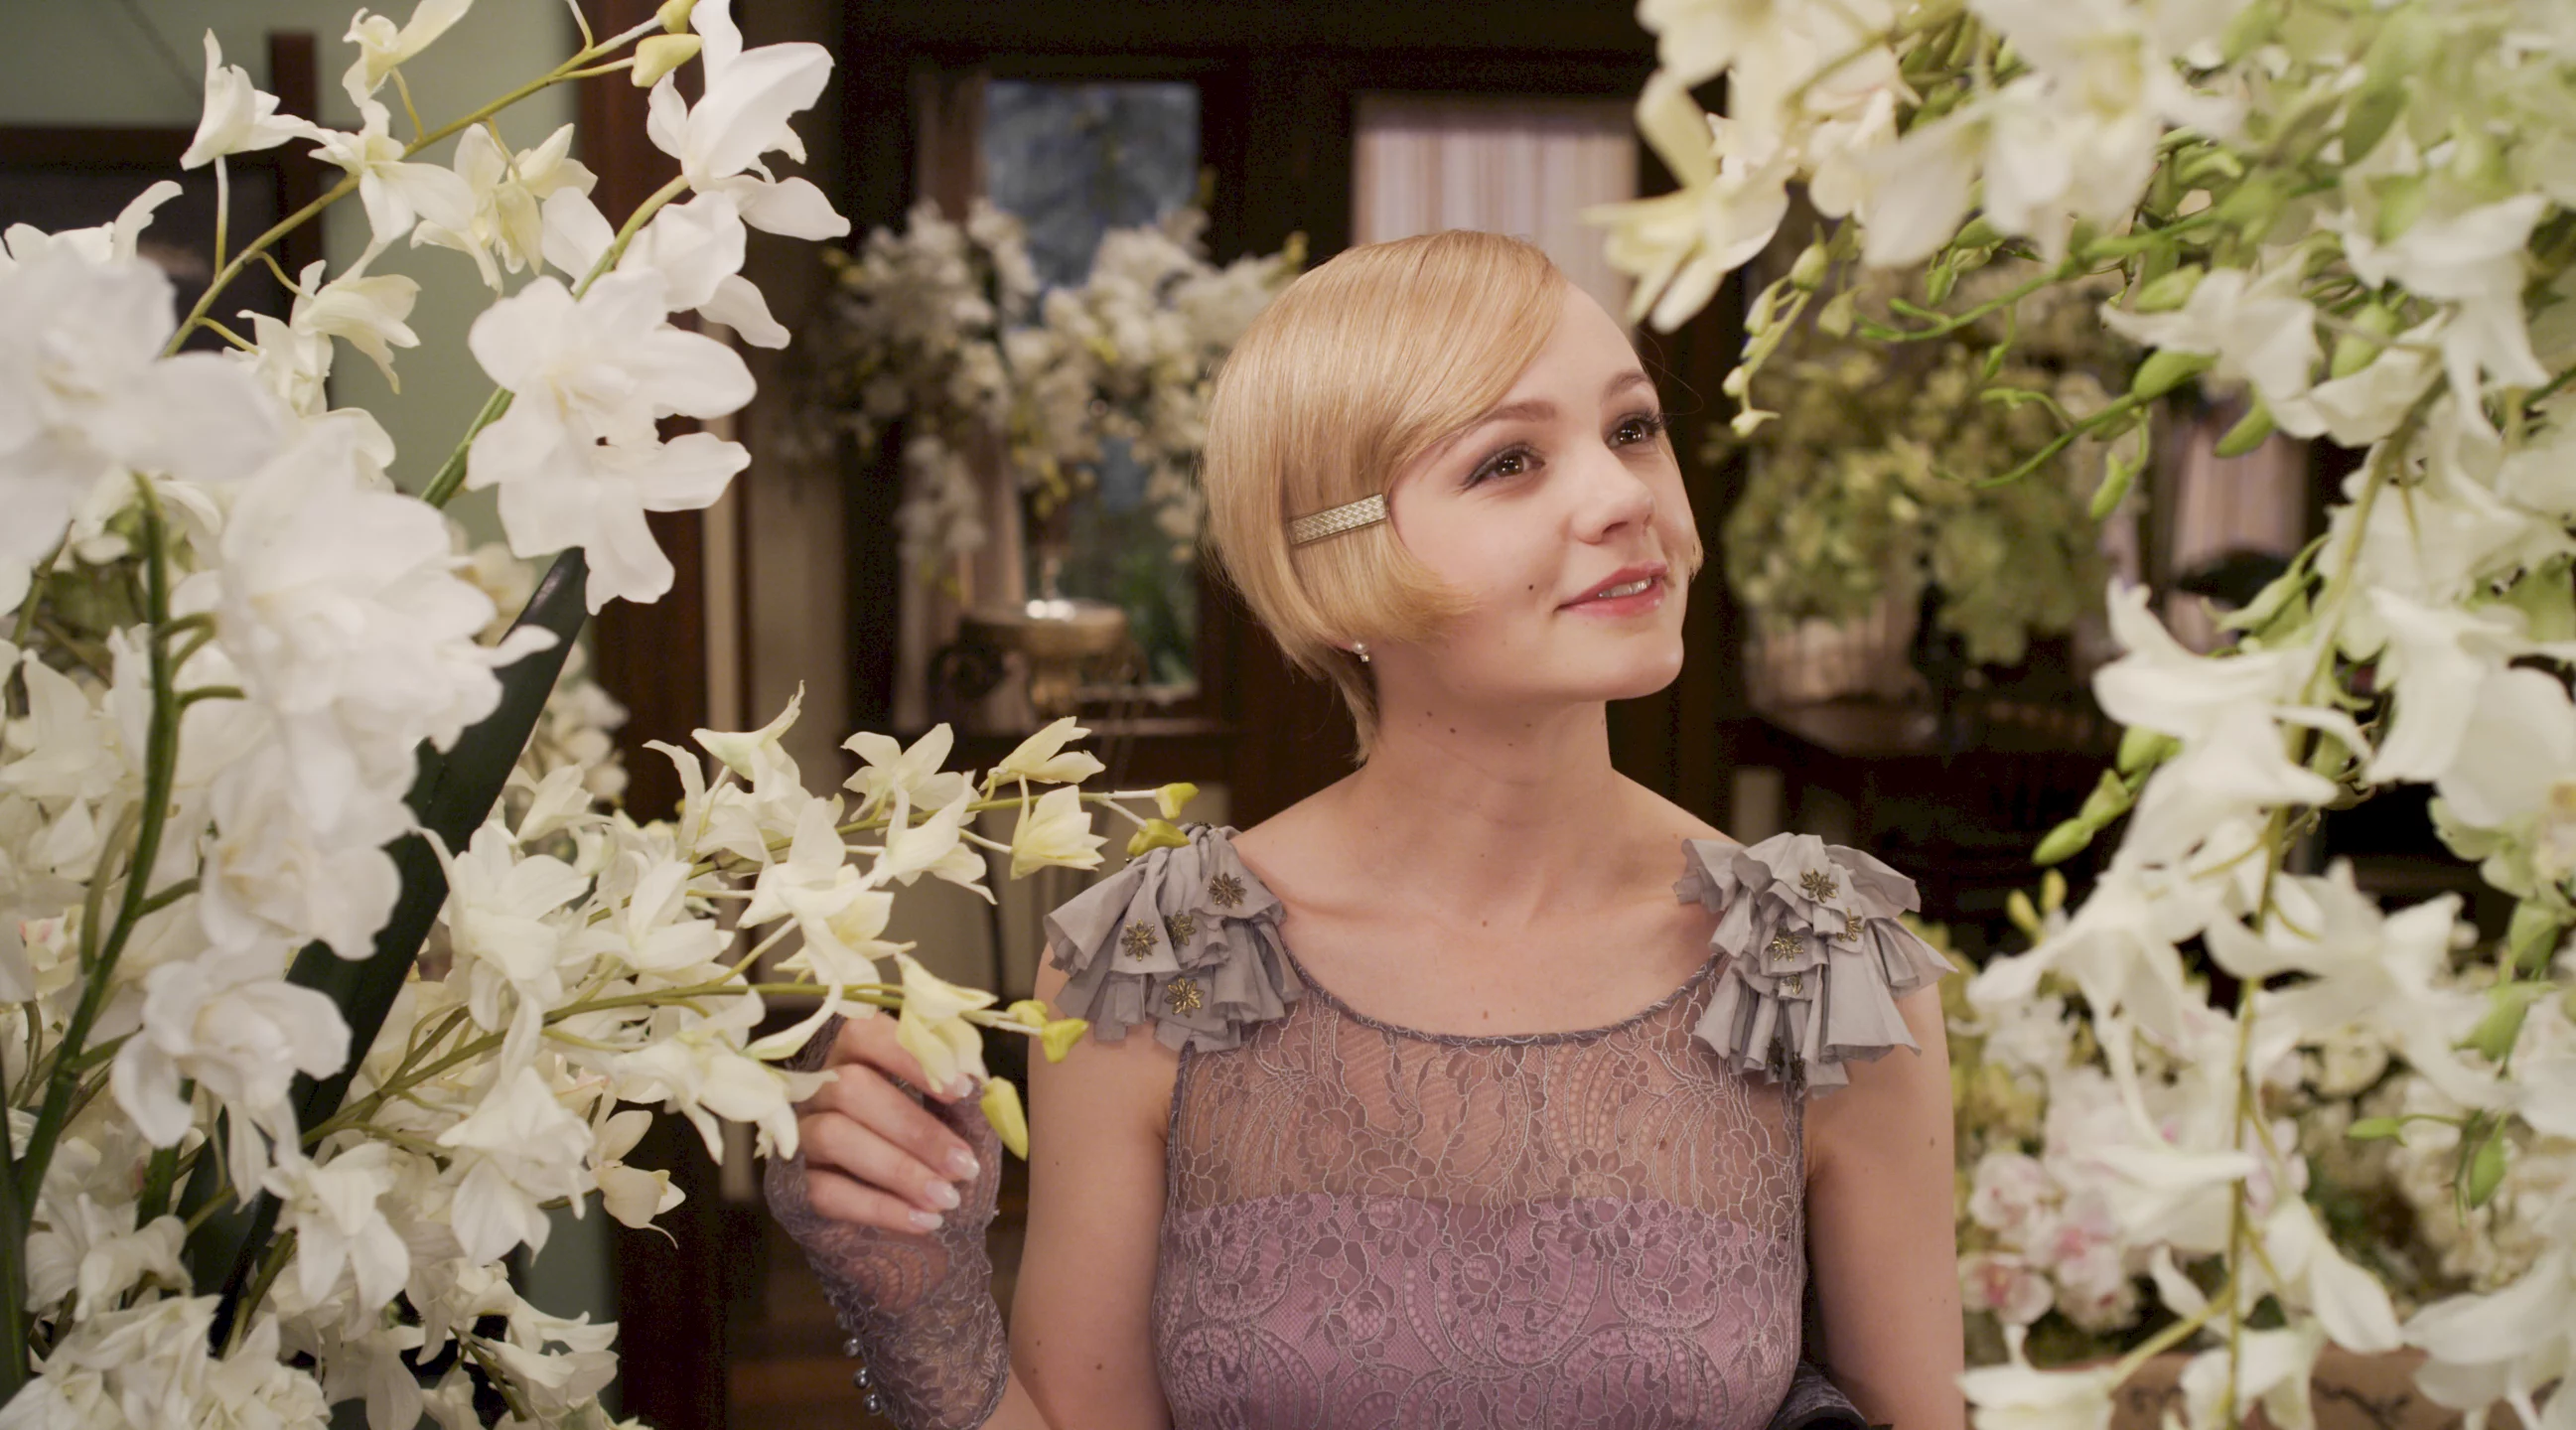 Photo du film : Gatsby le Magnifique